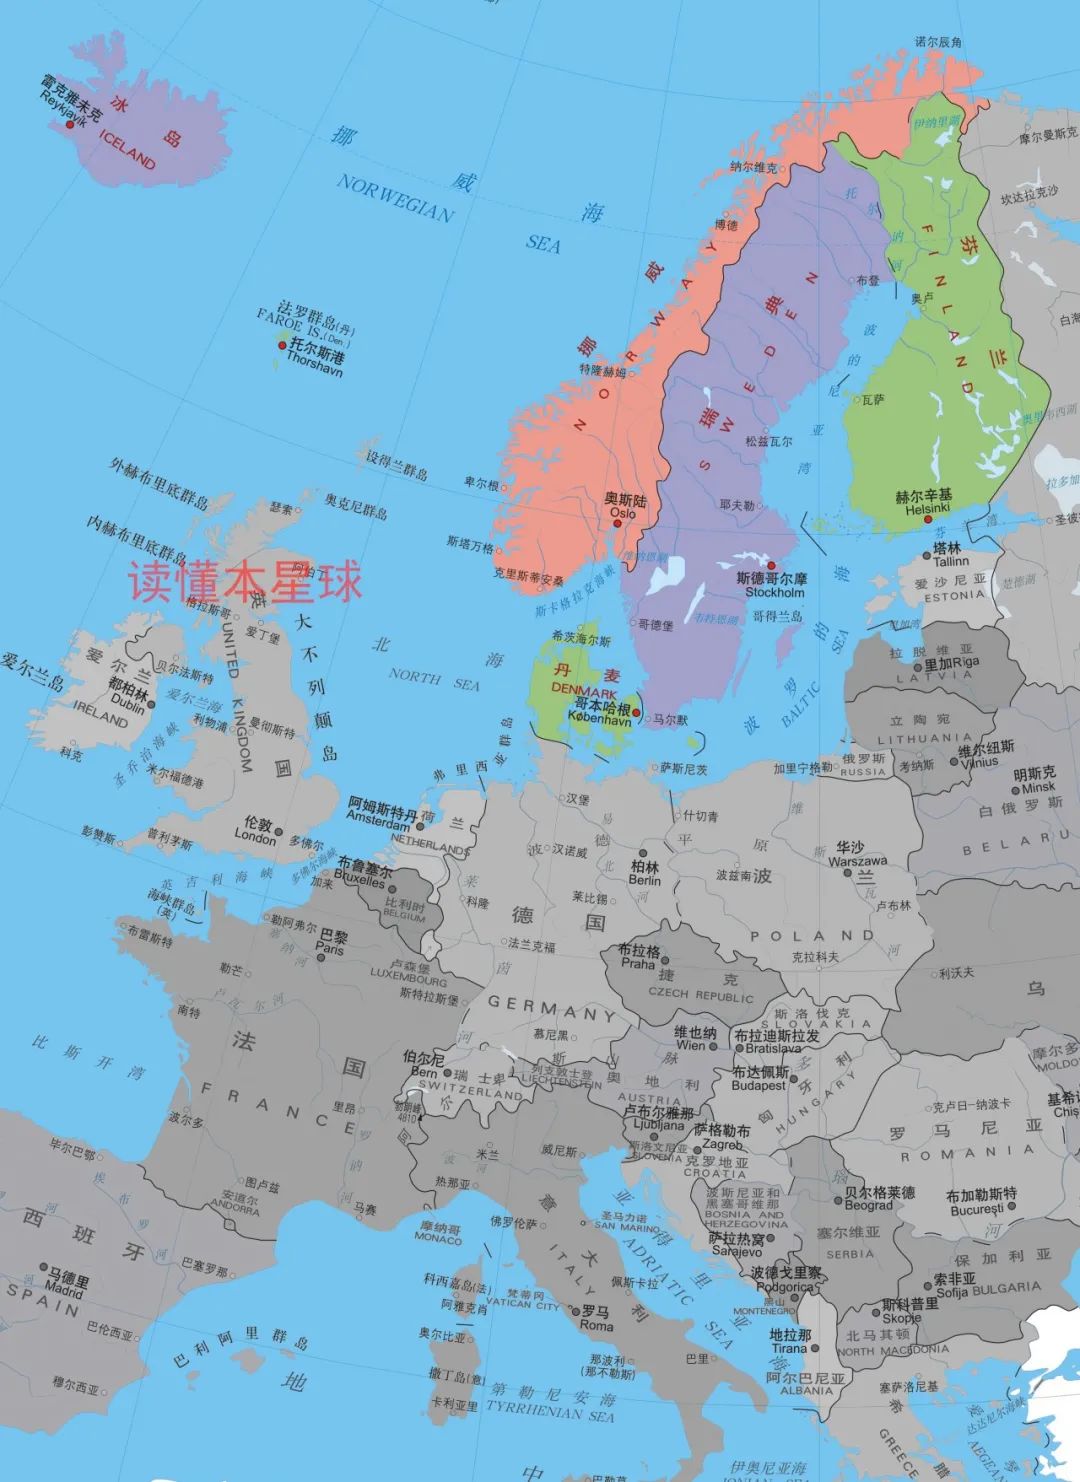 北欧五国为何只有芬兰使用欧元?